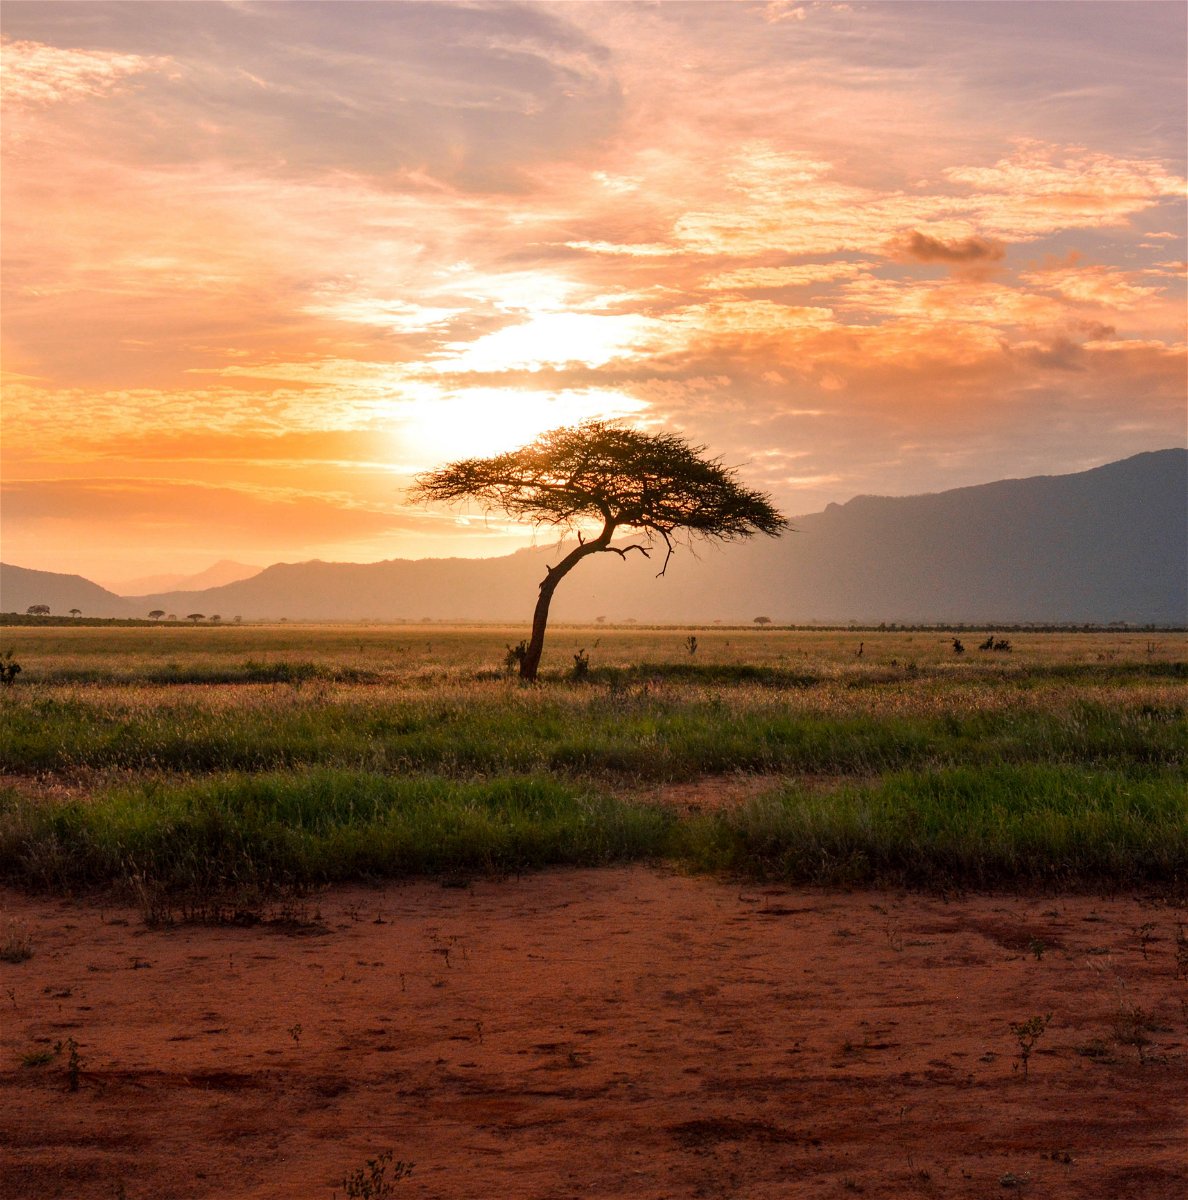 Kenya National Park at sunrise